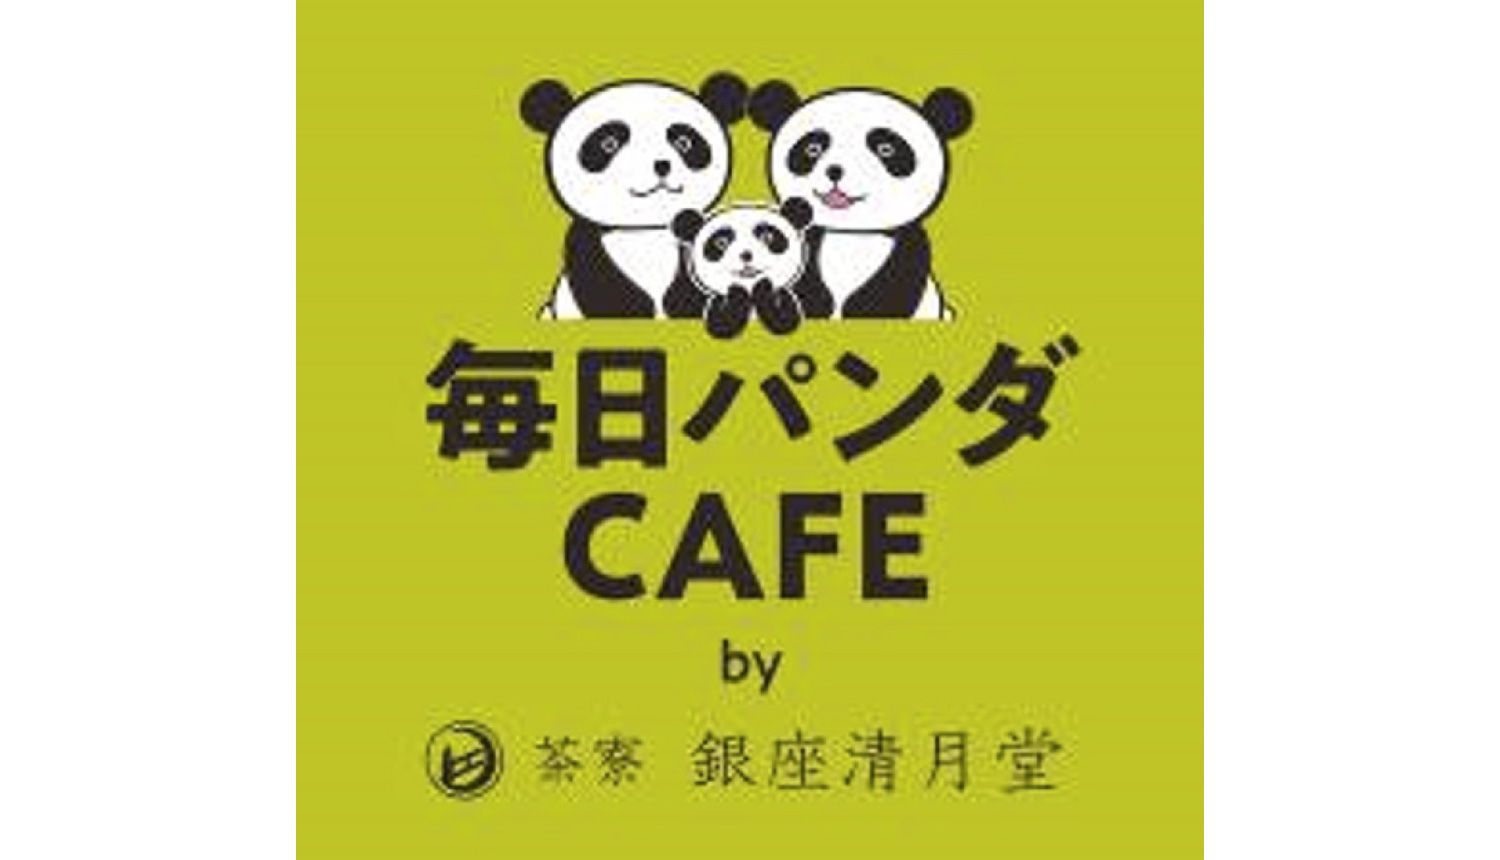 毎日パンダカフェ-Panda-cafe-熊貓咖啡店